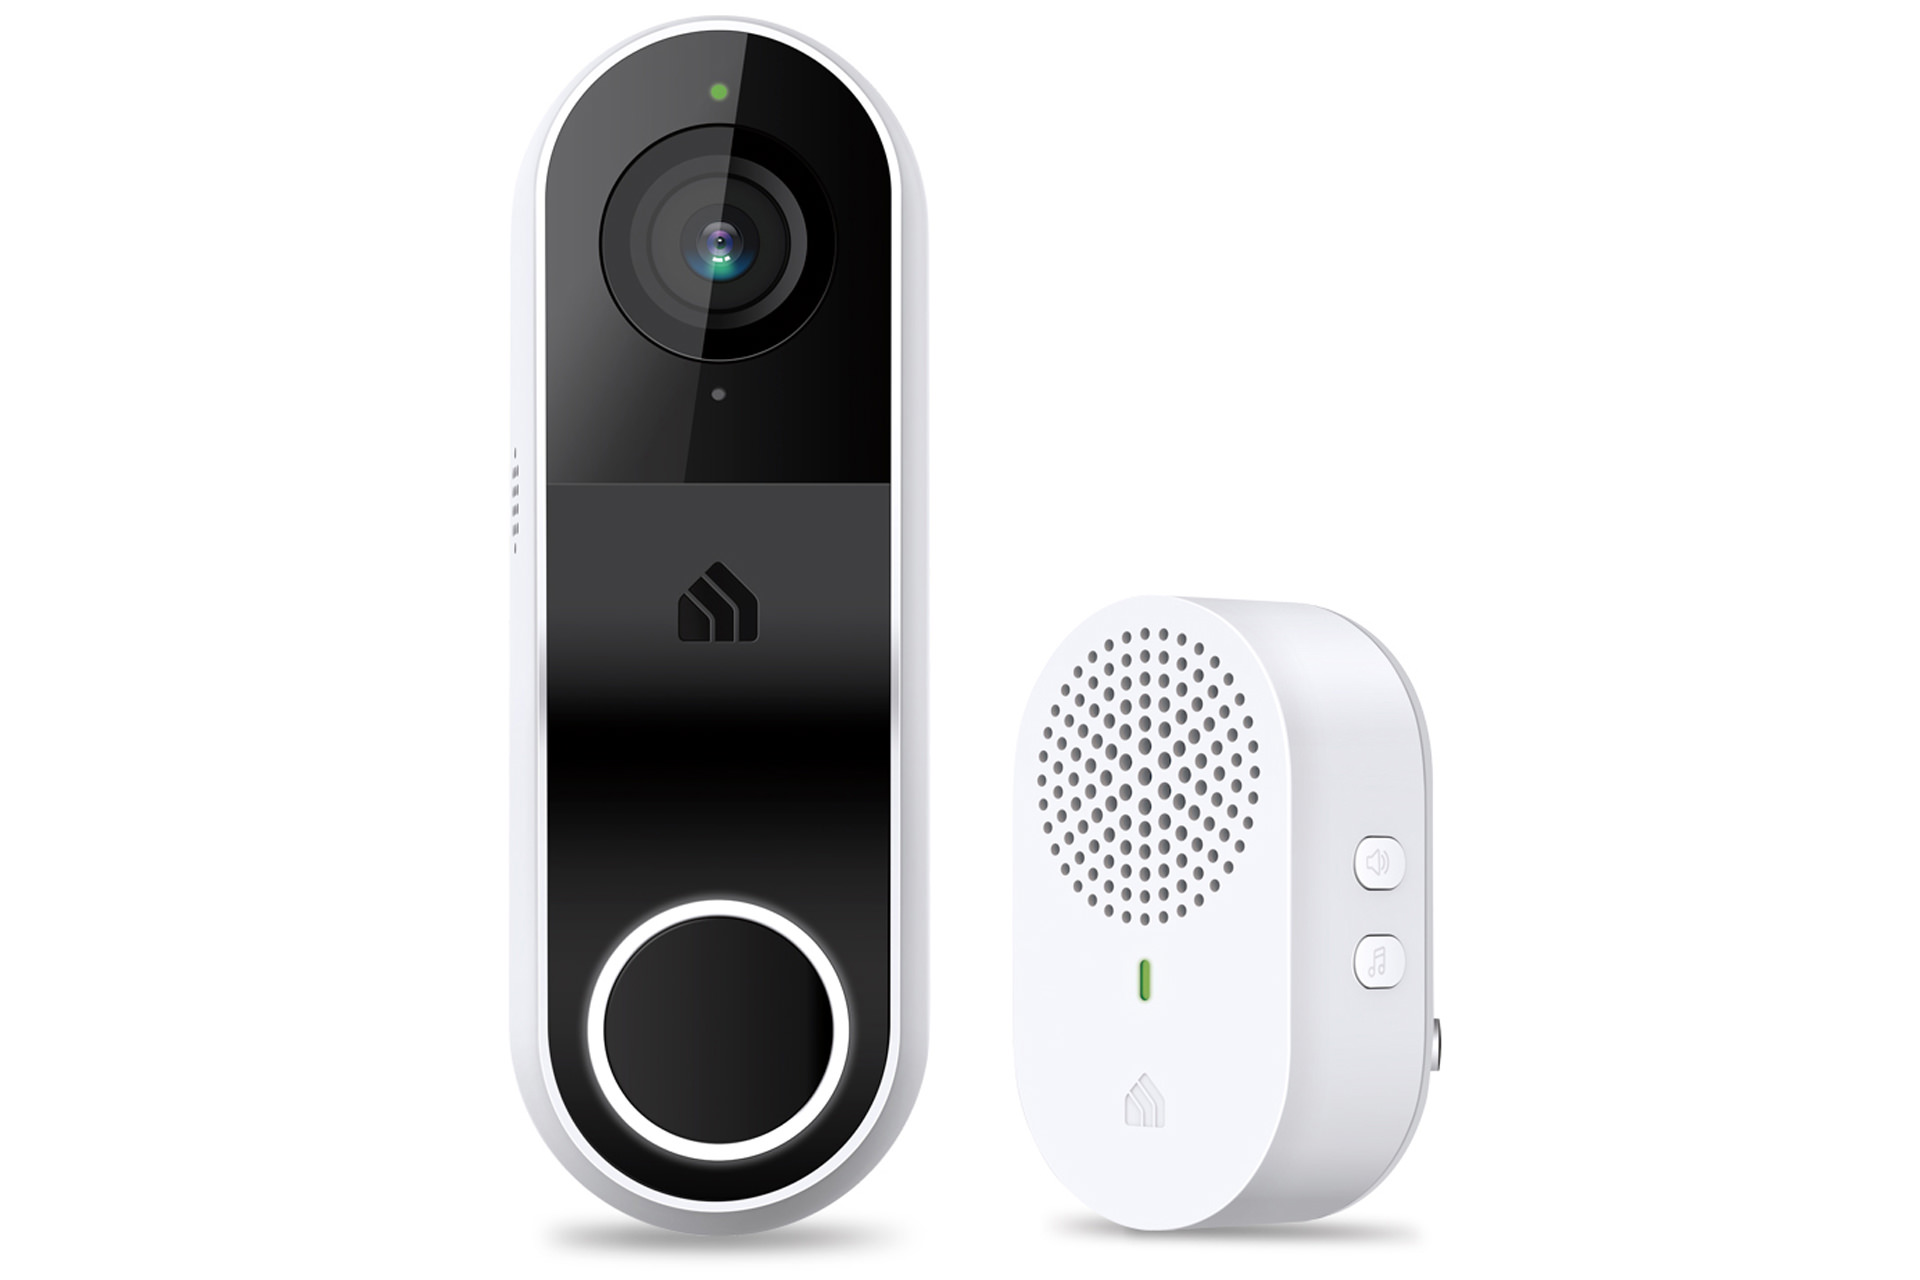 زنگ در هوشمند تی پی لینک Kasa Smart Doorbell از نمای جلو